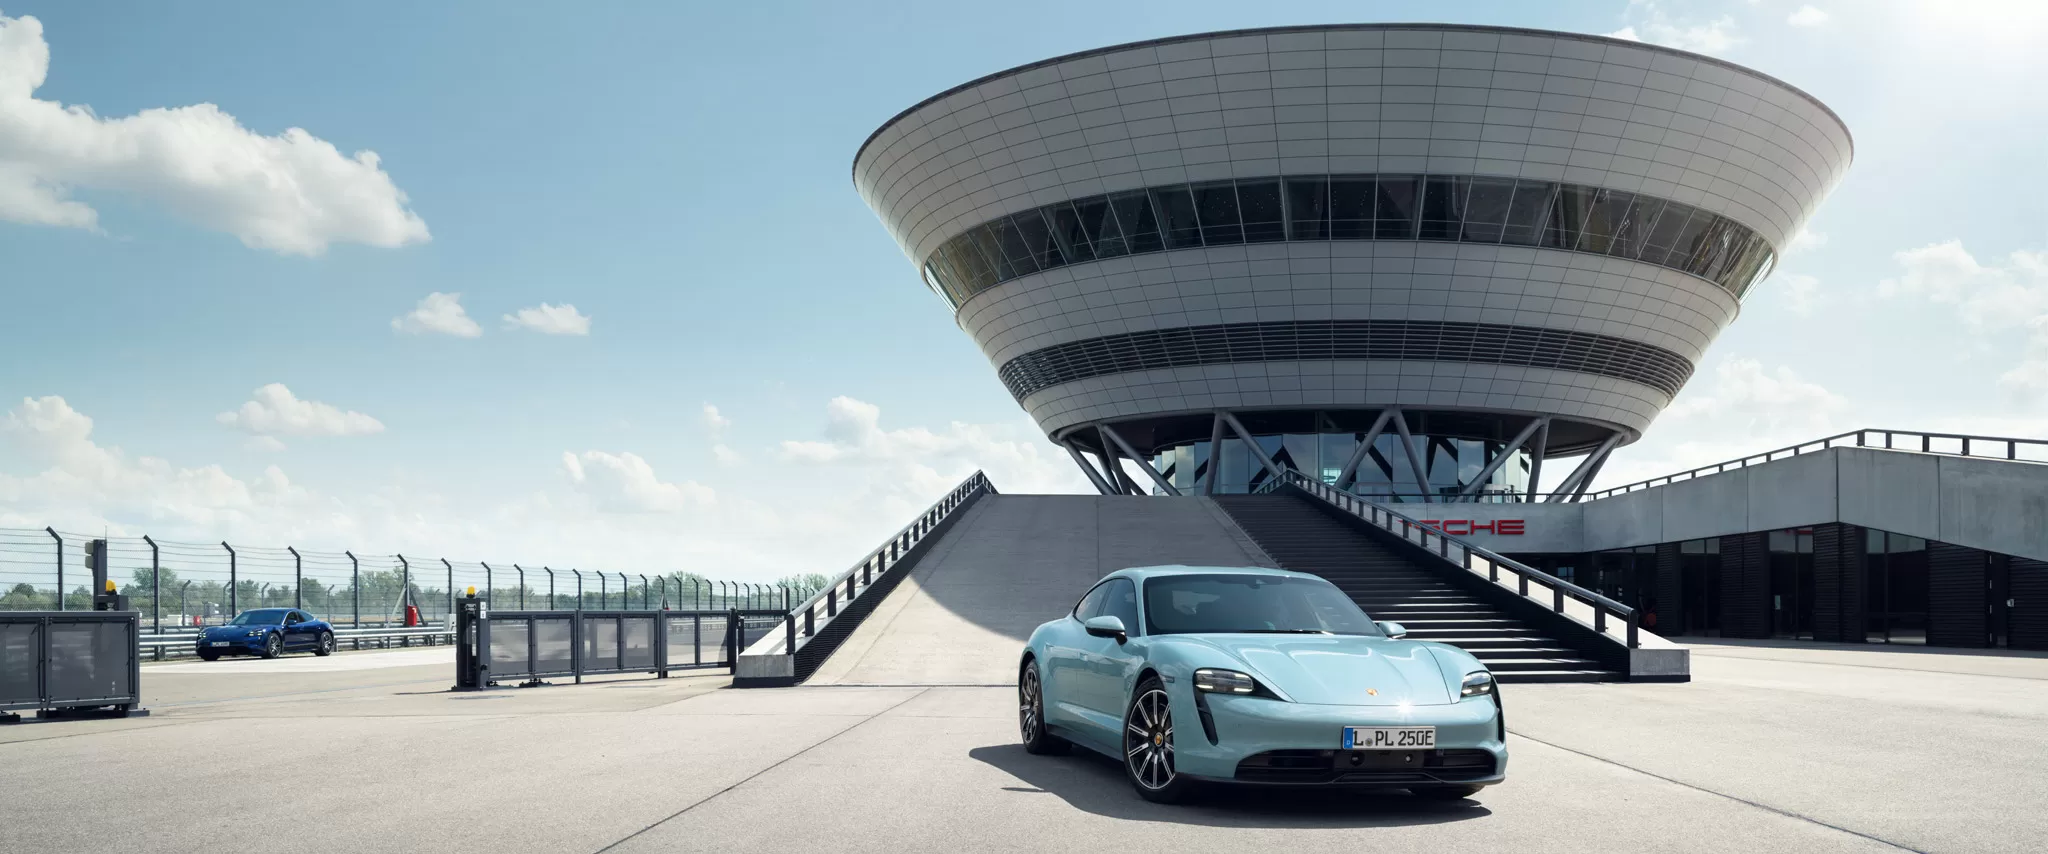 Завод Porsche в Лейпциге готовится к электромобильности.